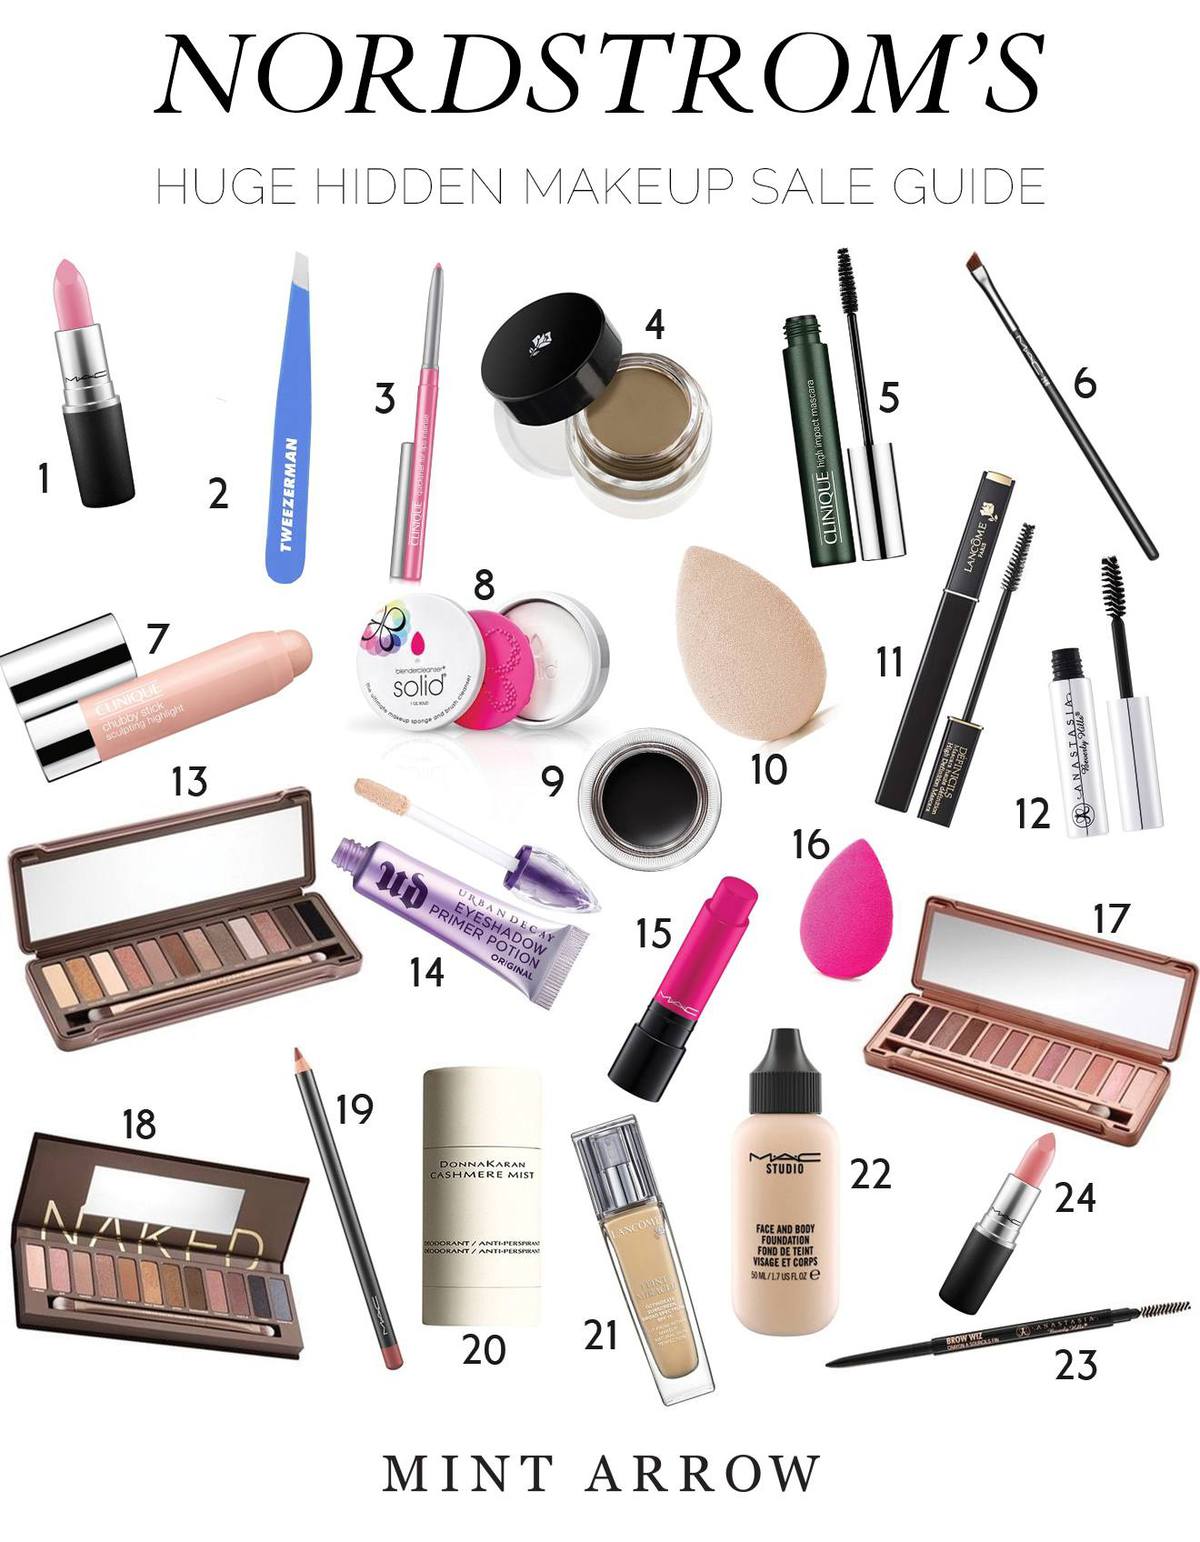 huge hidden makeup sale guide!